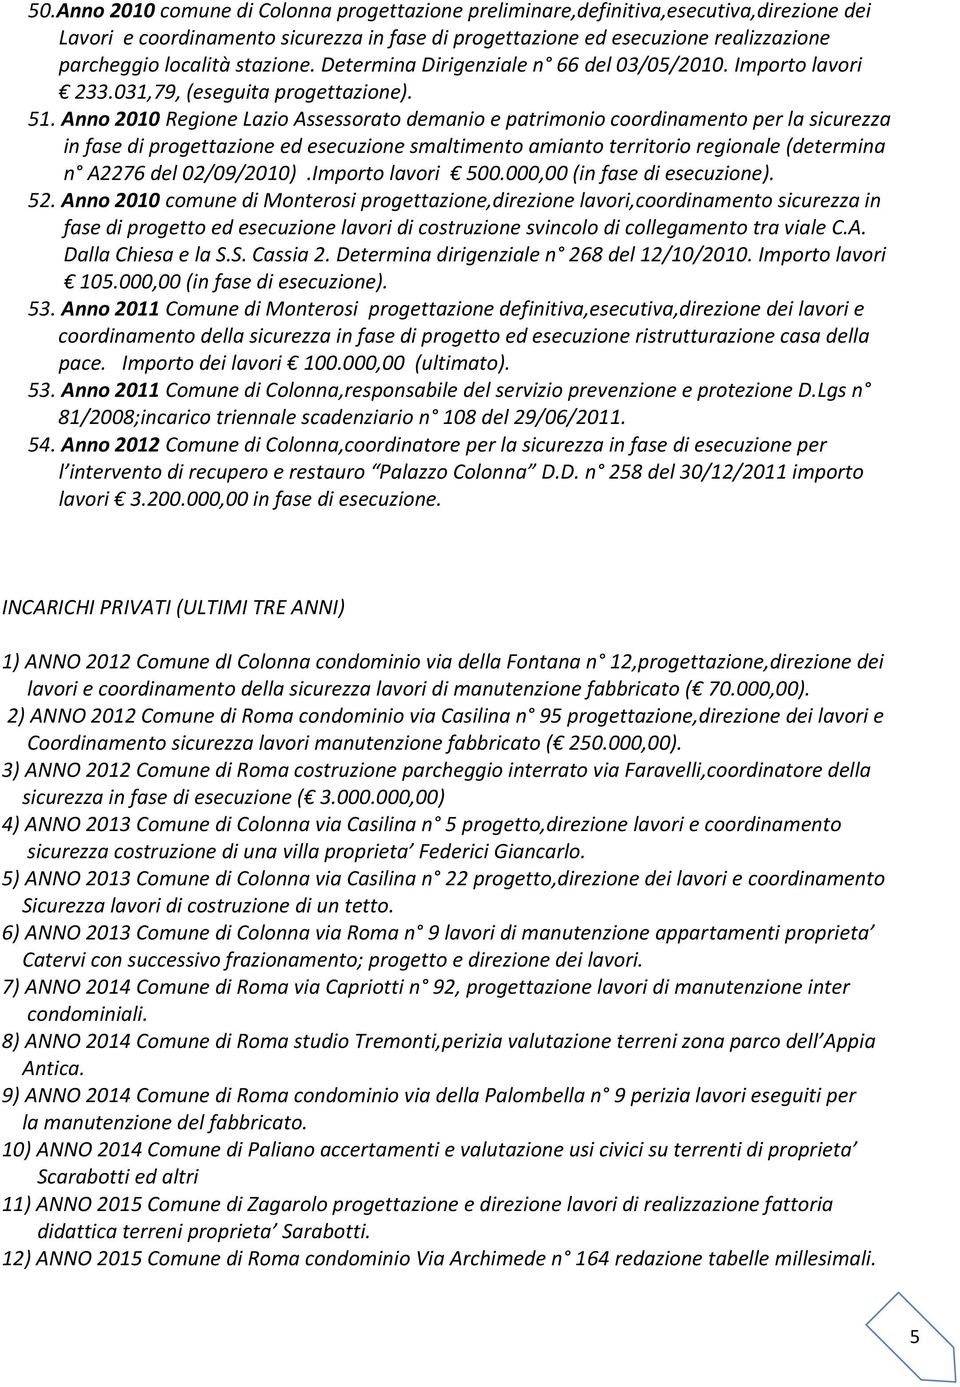 Anno 2010 Regione Lazio Assessorato demanio e patrimonio coordinamento per la sicurezza in fase di progettazione ed esecuzione smaltimento amianto territorio regionale (determina n A2276 del